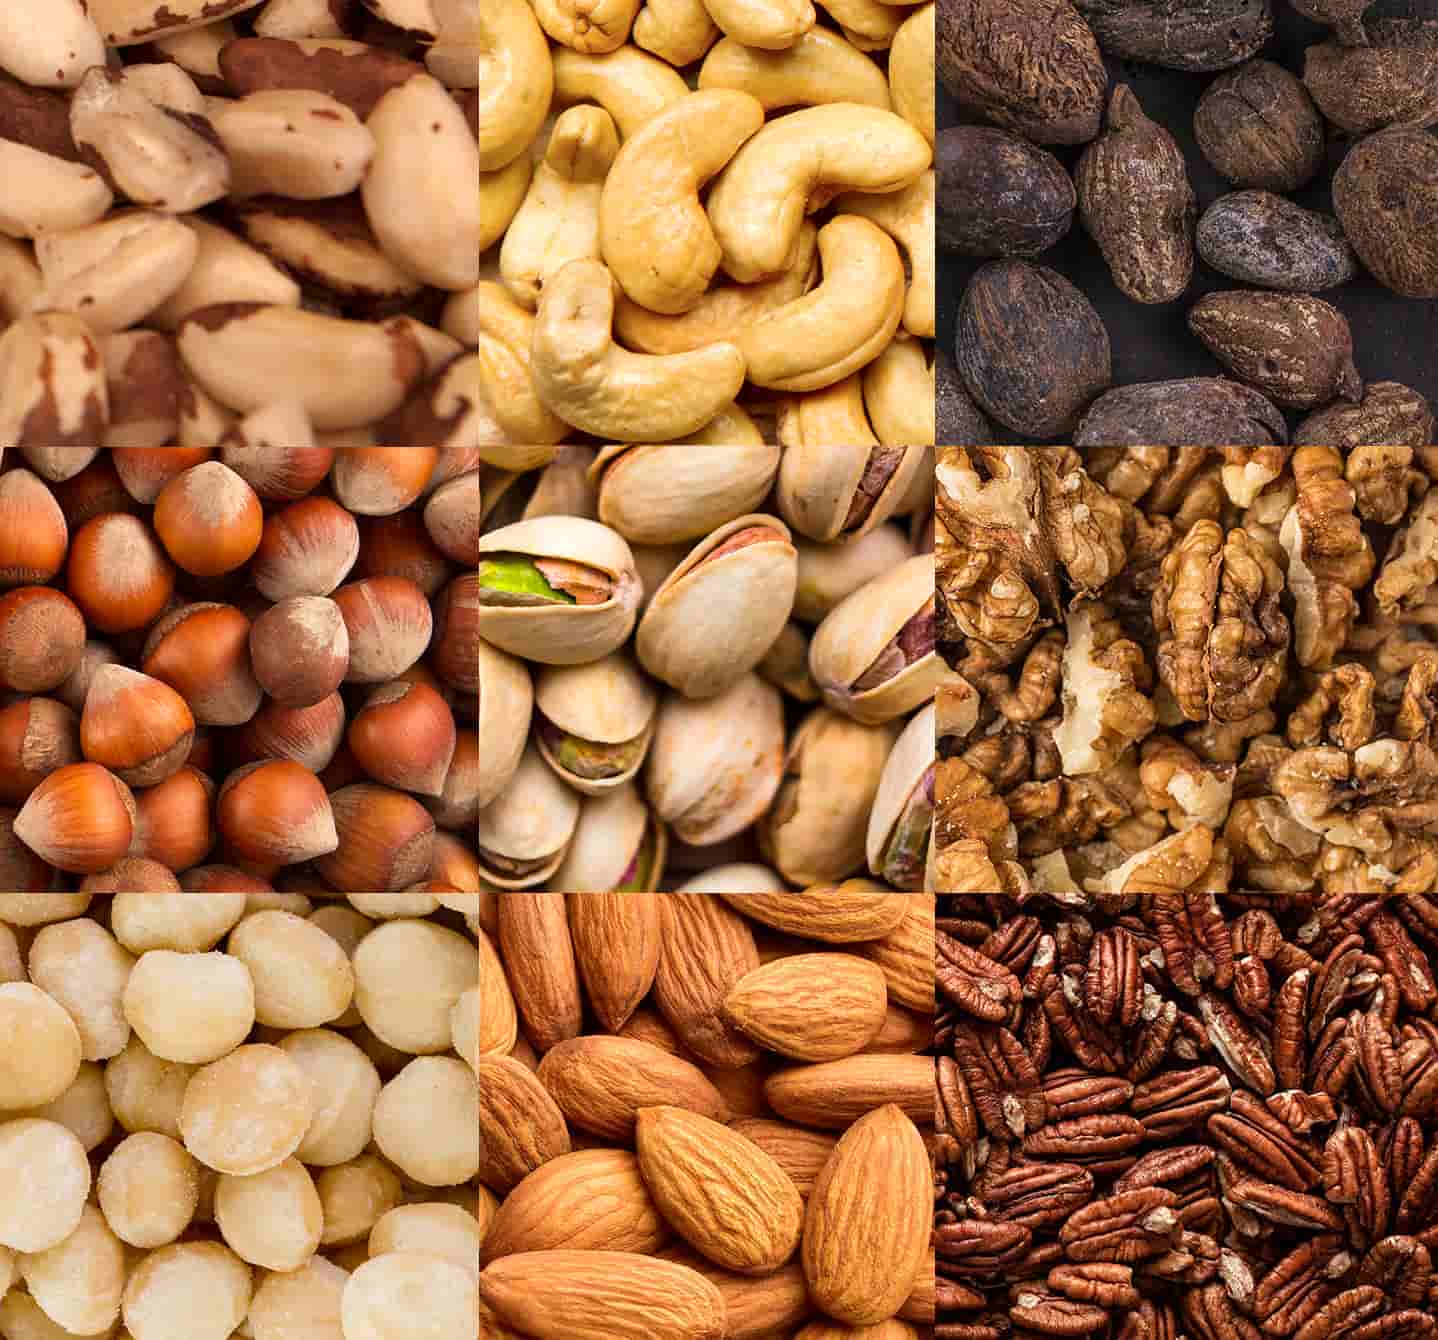 Eine Nussallergie kann man auf Erdnüsse oder Baumnüsse wie Mandeln, Paranüsse oder Macadamianüsse, Cashewnüsse, Haselnüsse, Pekannüsse, Pistazien oder Walnüsse haben.